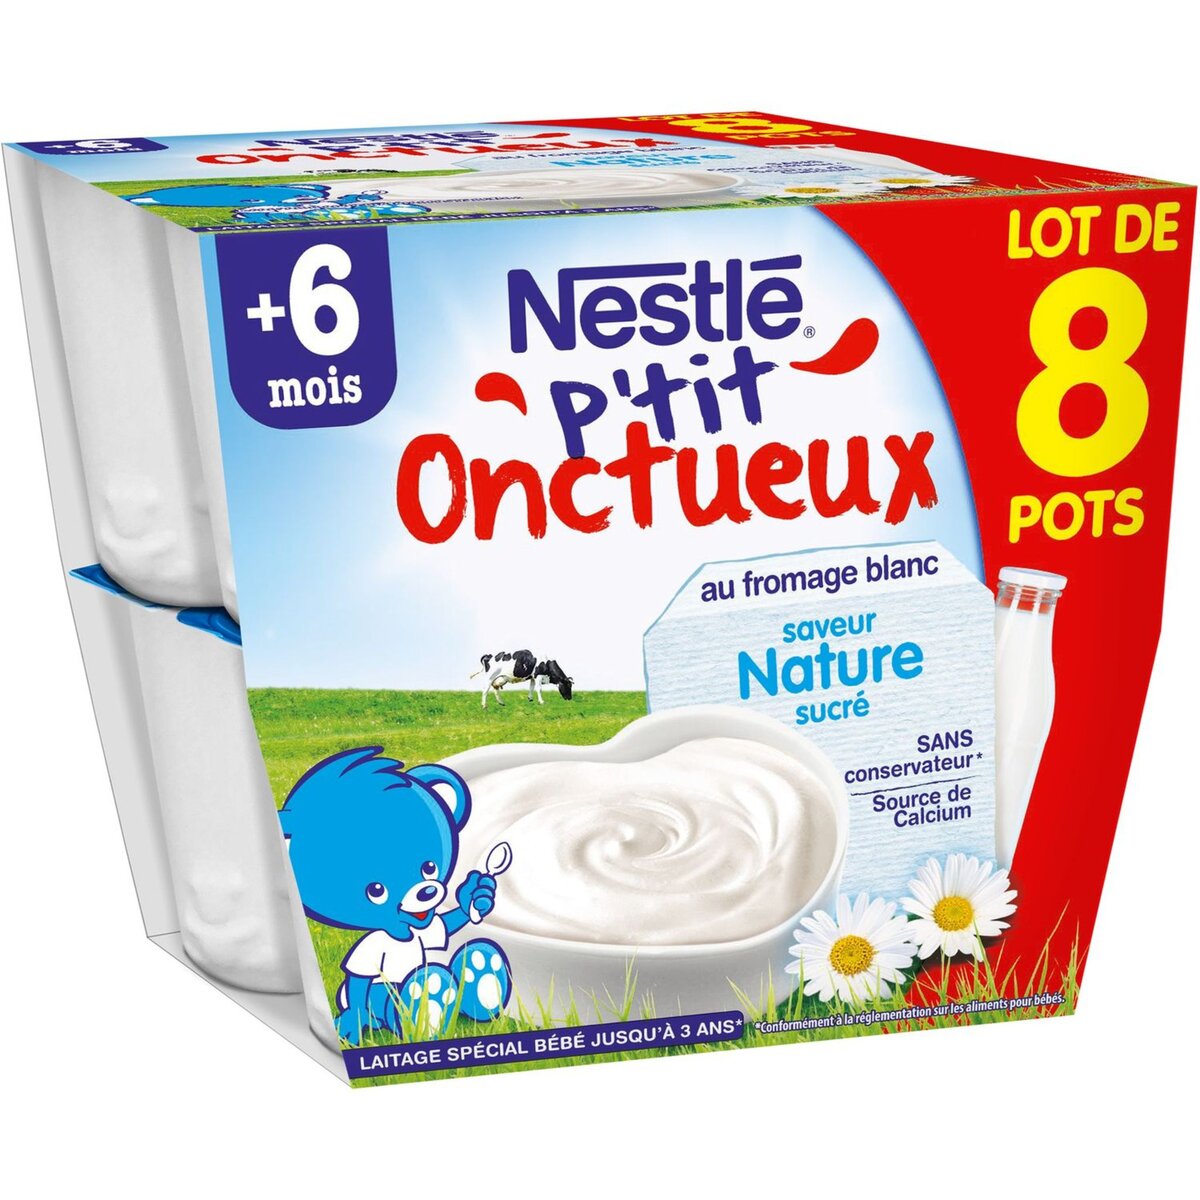 NESTLE Nestlé p'tit onctueux coupelles natures 8x100g